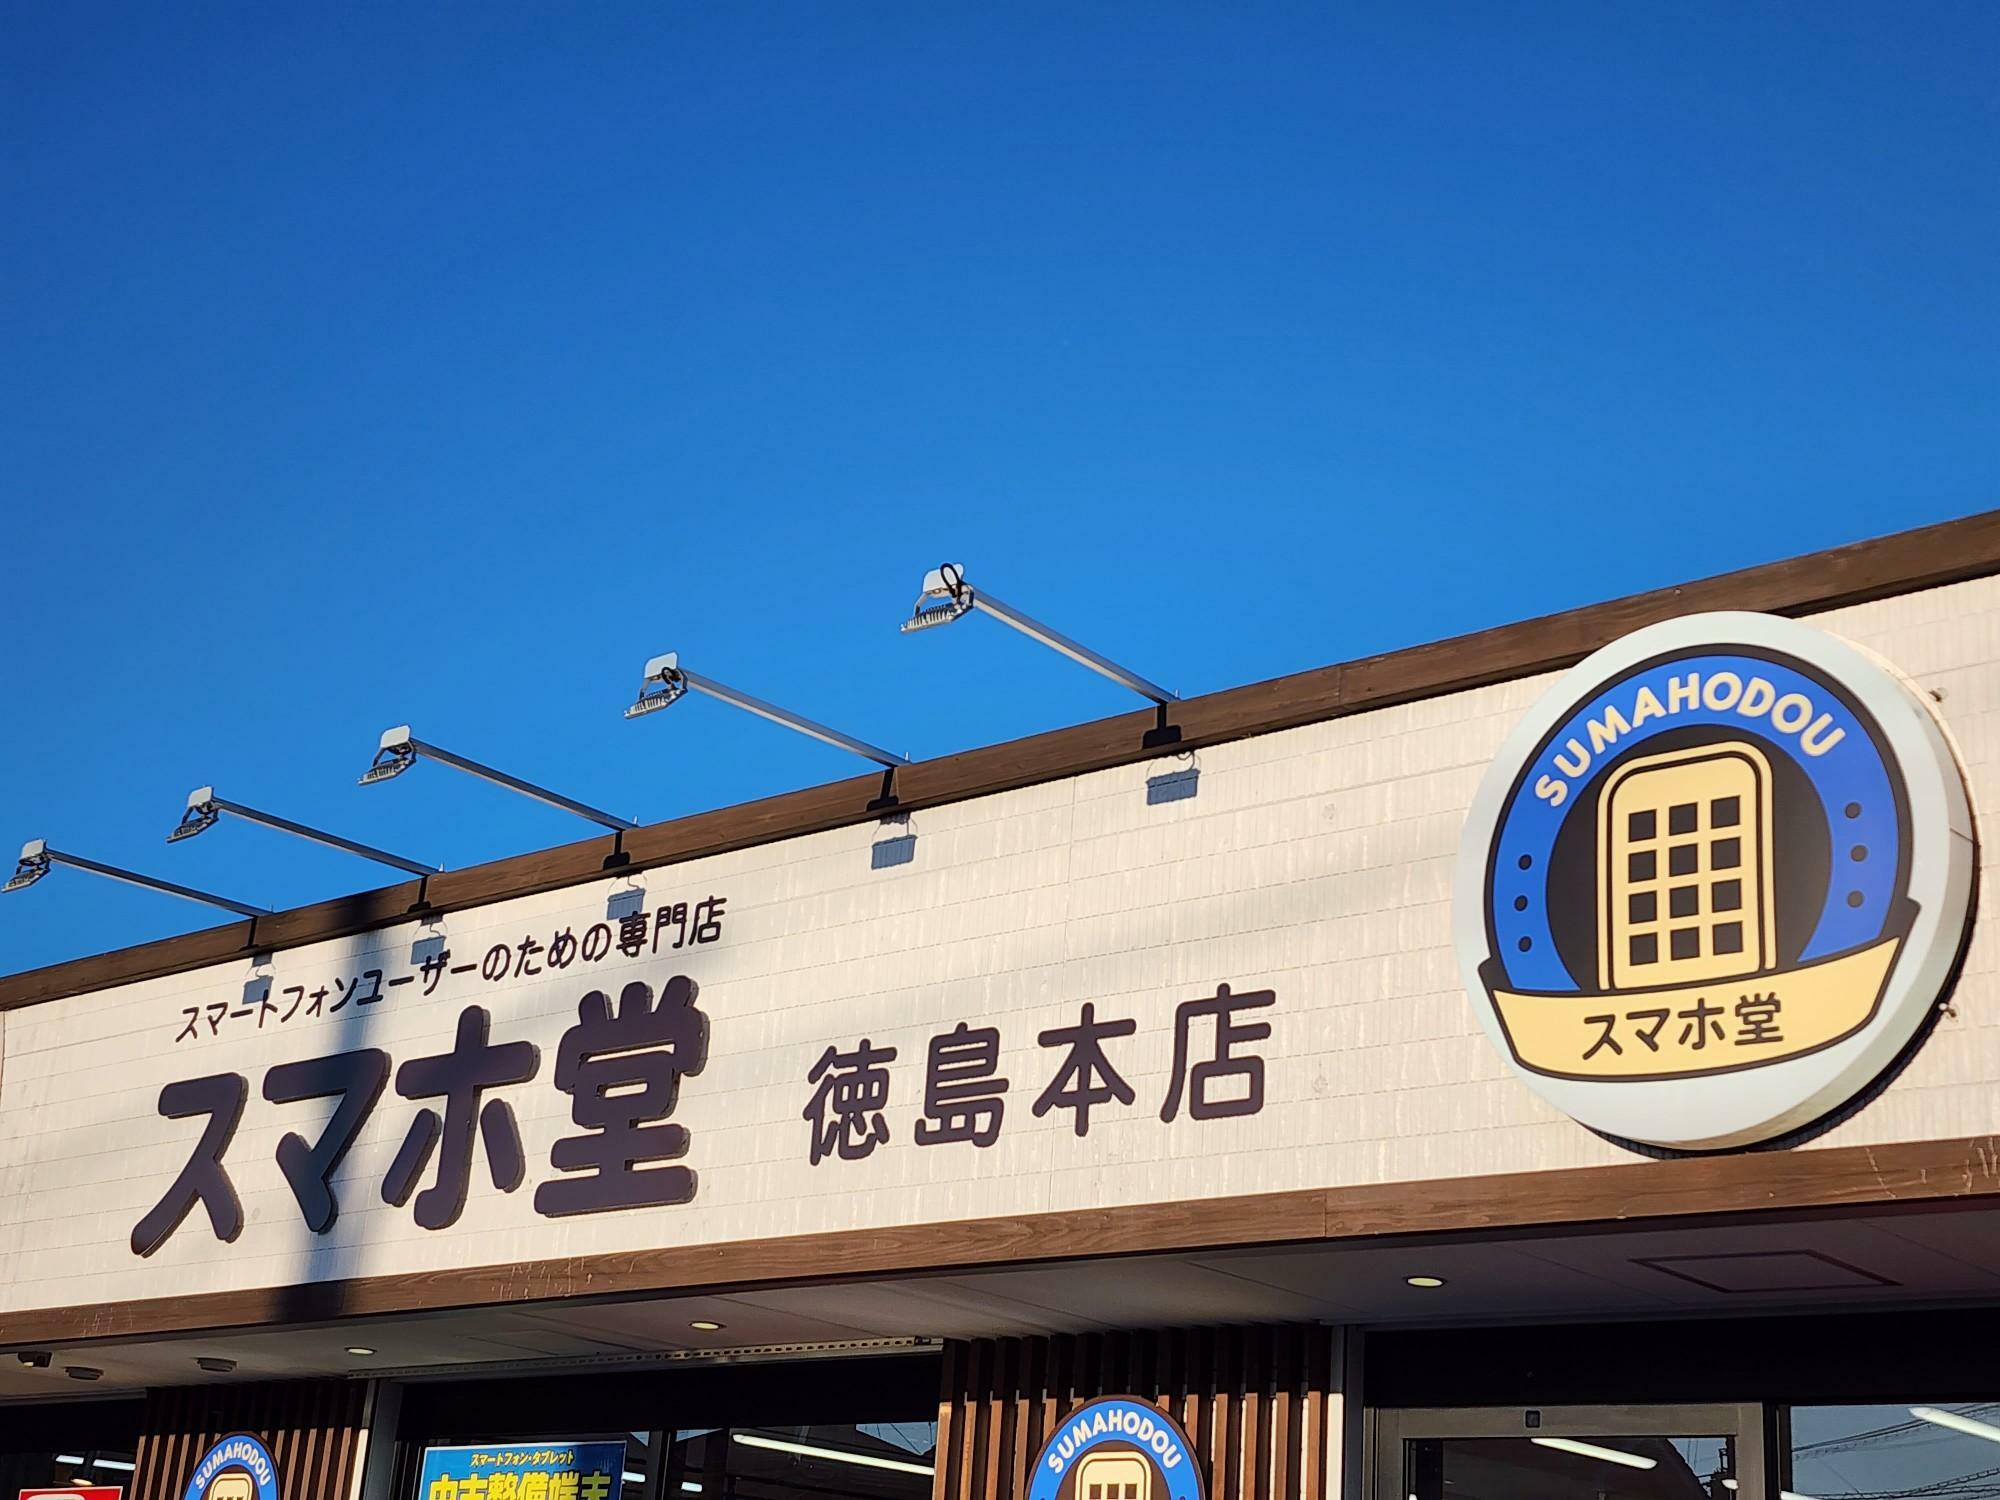 「スマホ堂 徳島本店」看板。